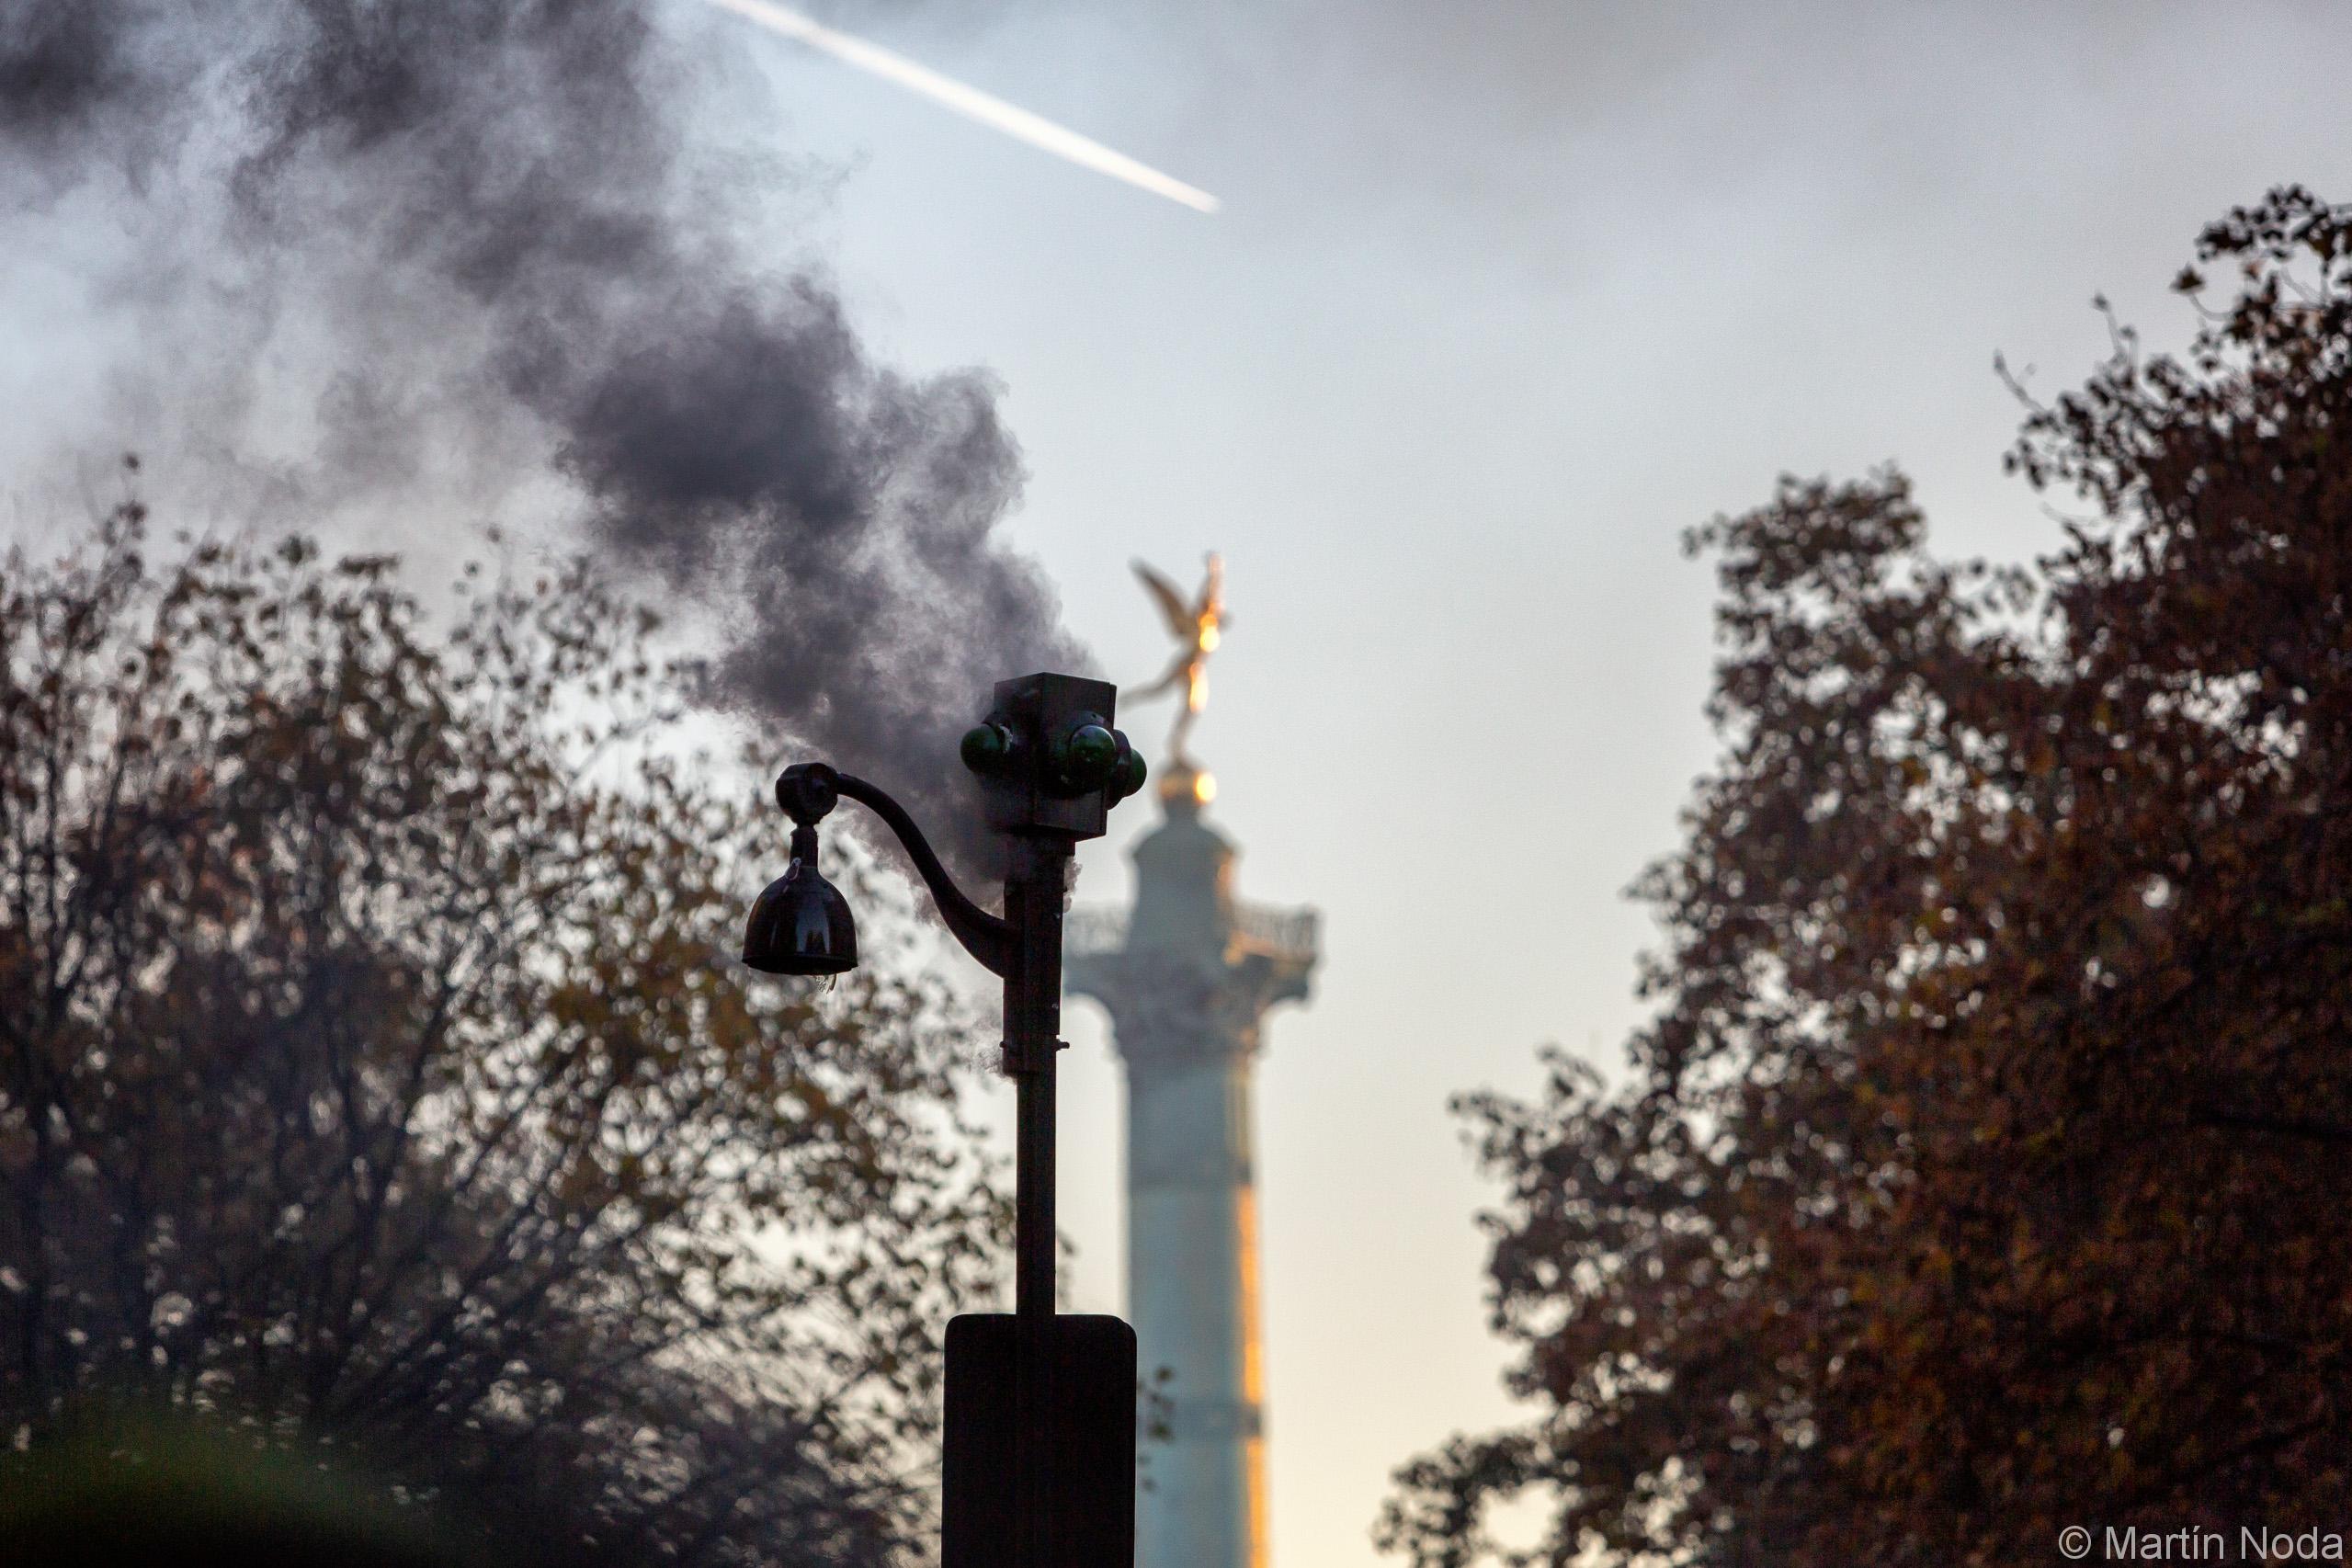 Une camera de vidéo surveillance en feu près de la place de la bastille, marche des libertés, Paris, 28 novembre 2020.